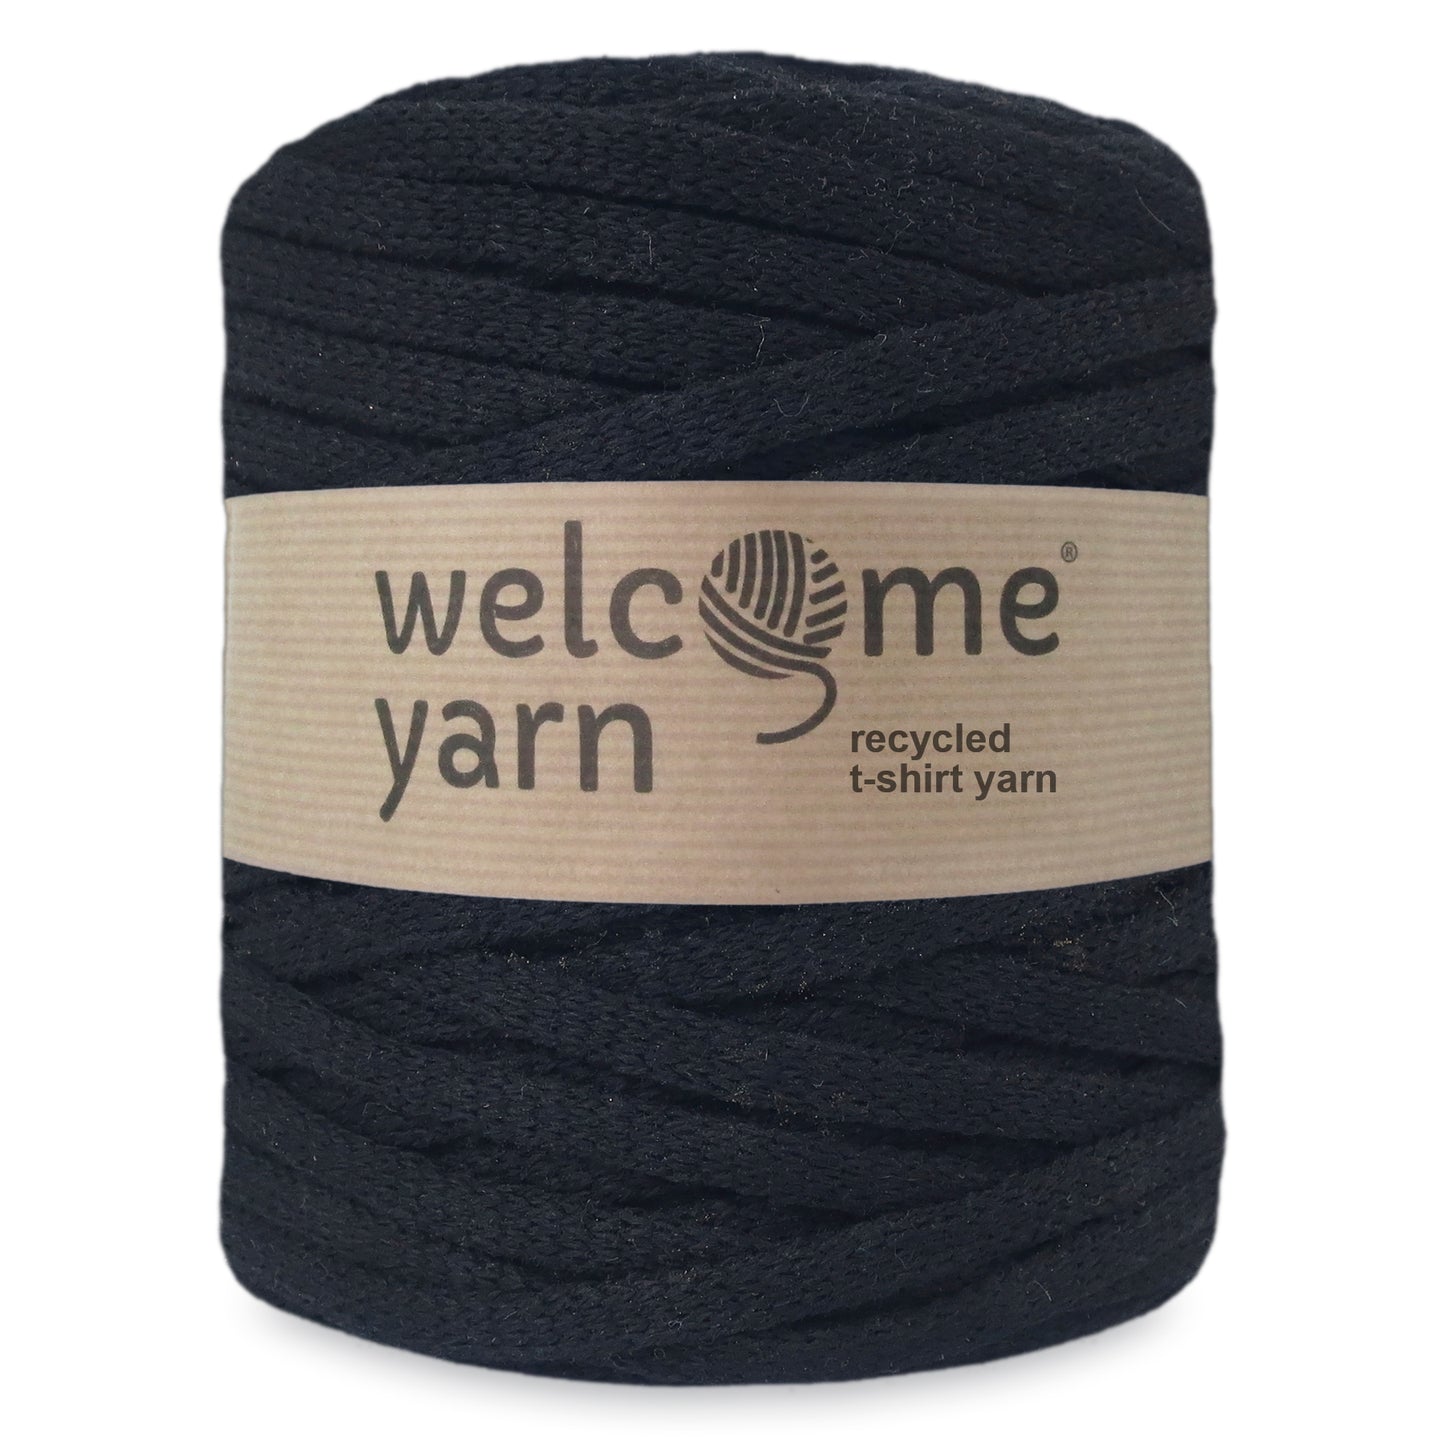 Limited Edition Yarn - Black